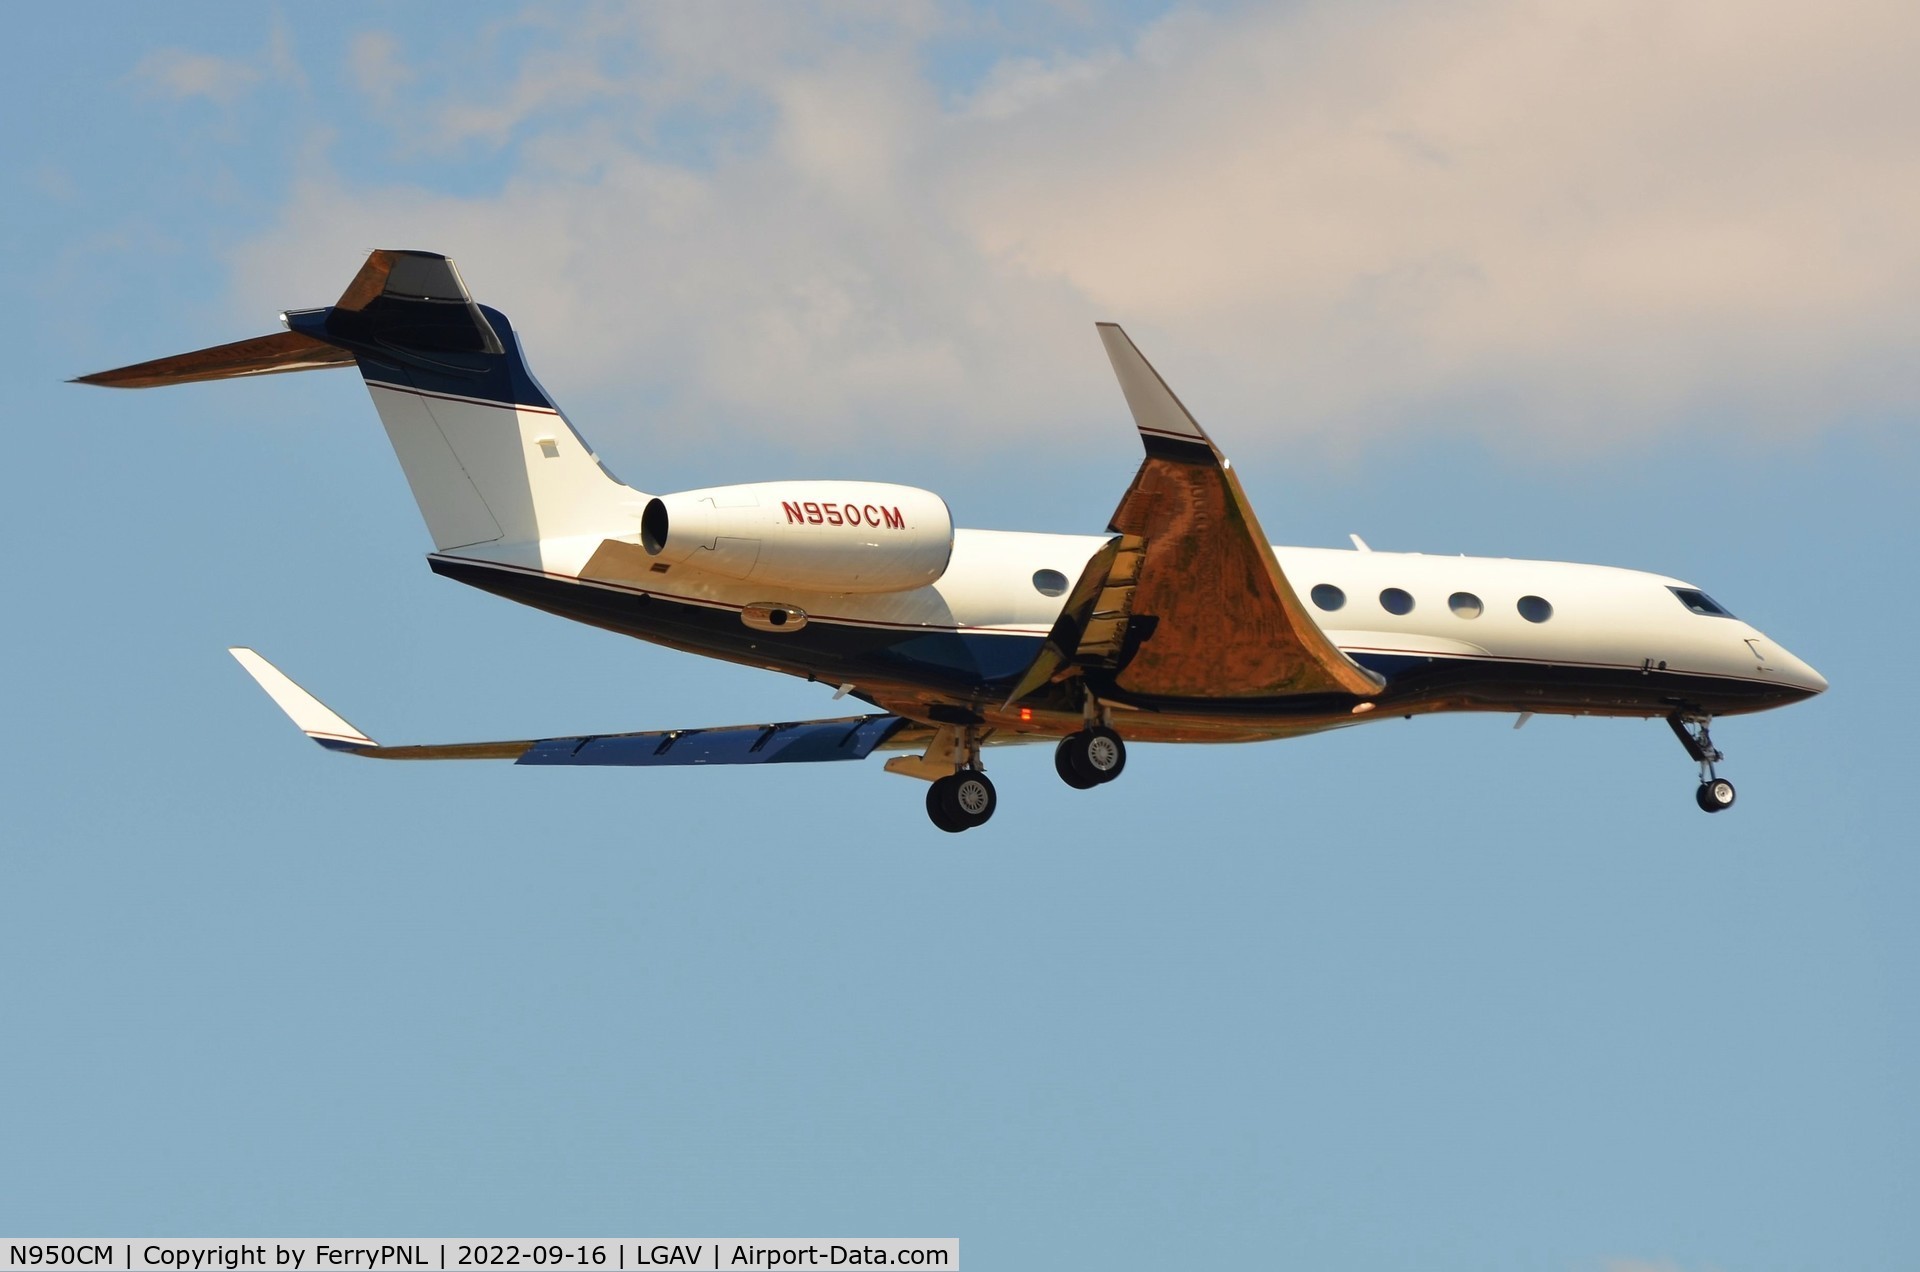 N950CM, 2016 Gulfstream G-VI (G650ER) C/N 6270, Oaktree Capital Management G650ER landing